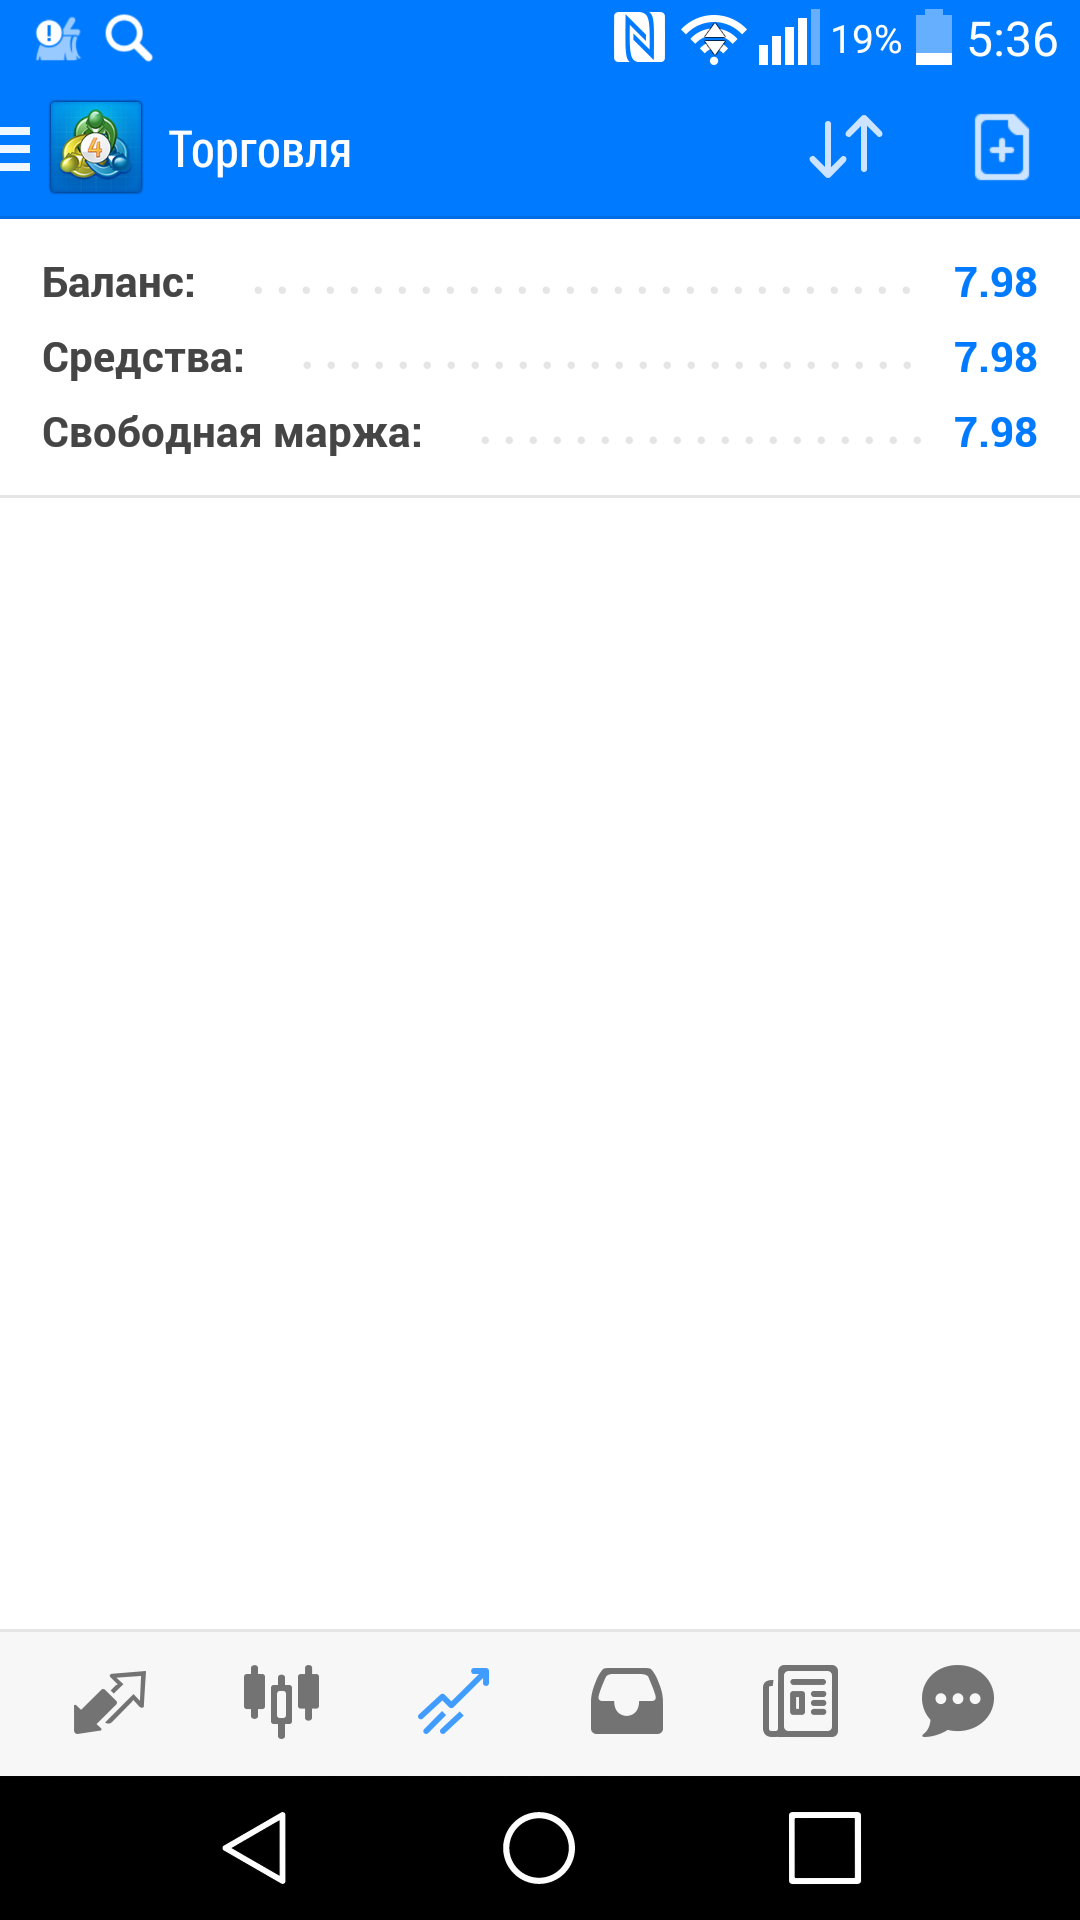 Саяногорск Инфо - screenshot_2019-04-25-05-36-47.png, Скачано: 157